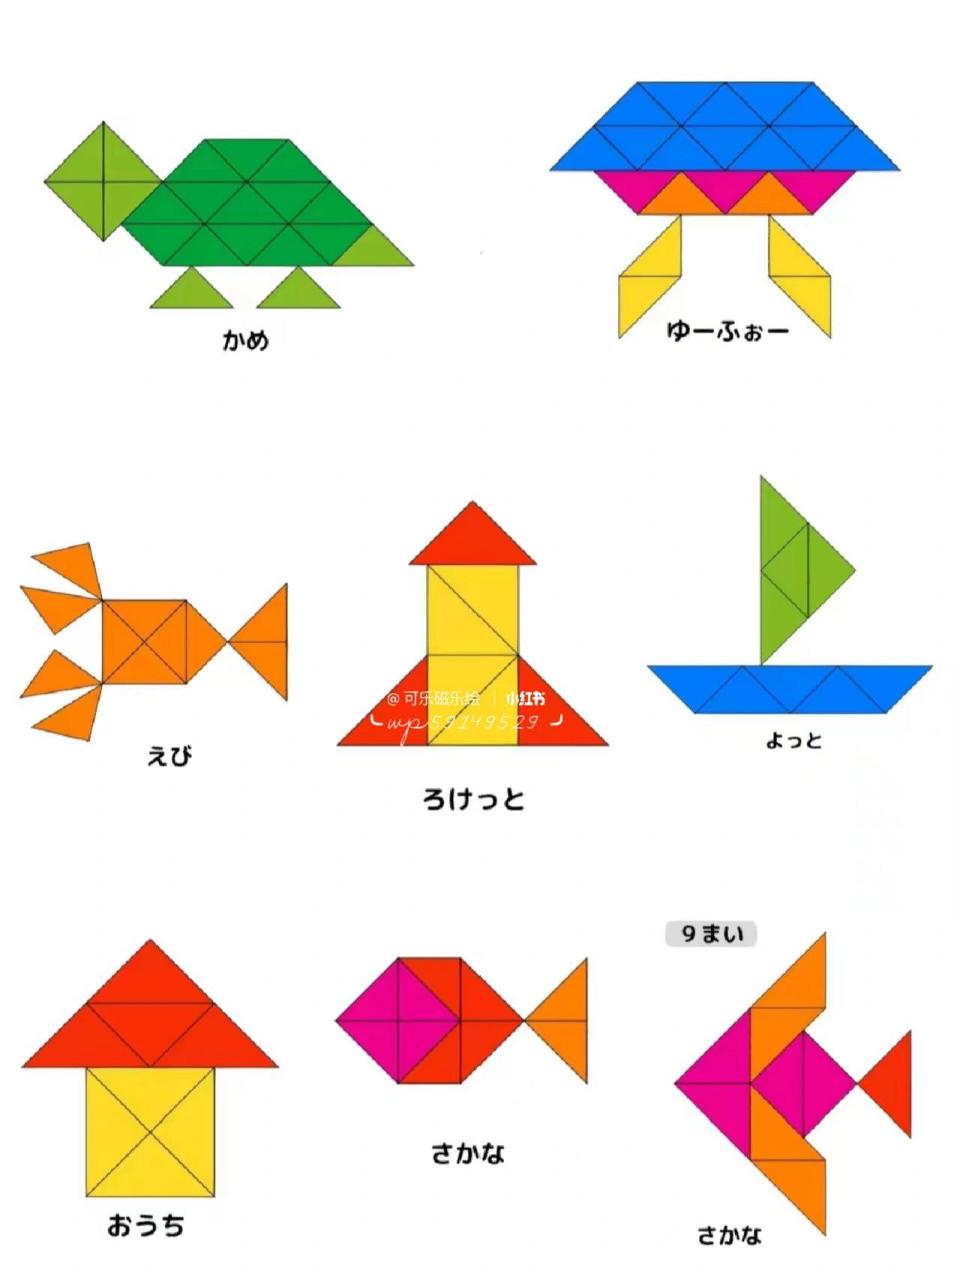 给孩子玩儿的三角形拼图 给孩子找来的三角拼图图纸,看到好多伙伴喜欢